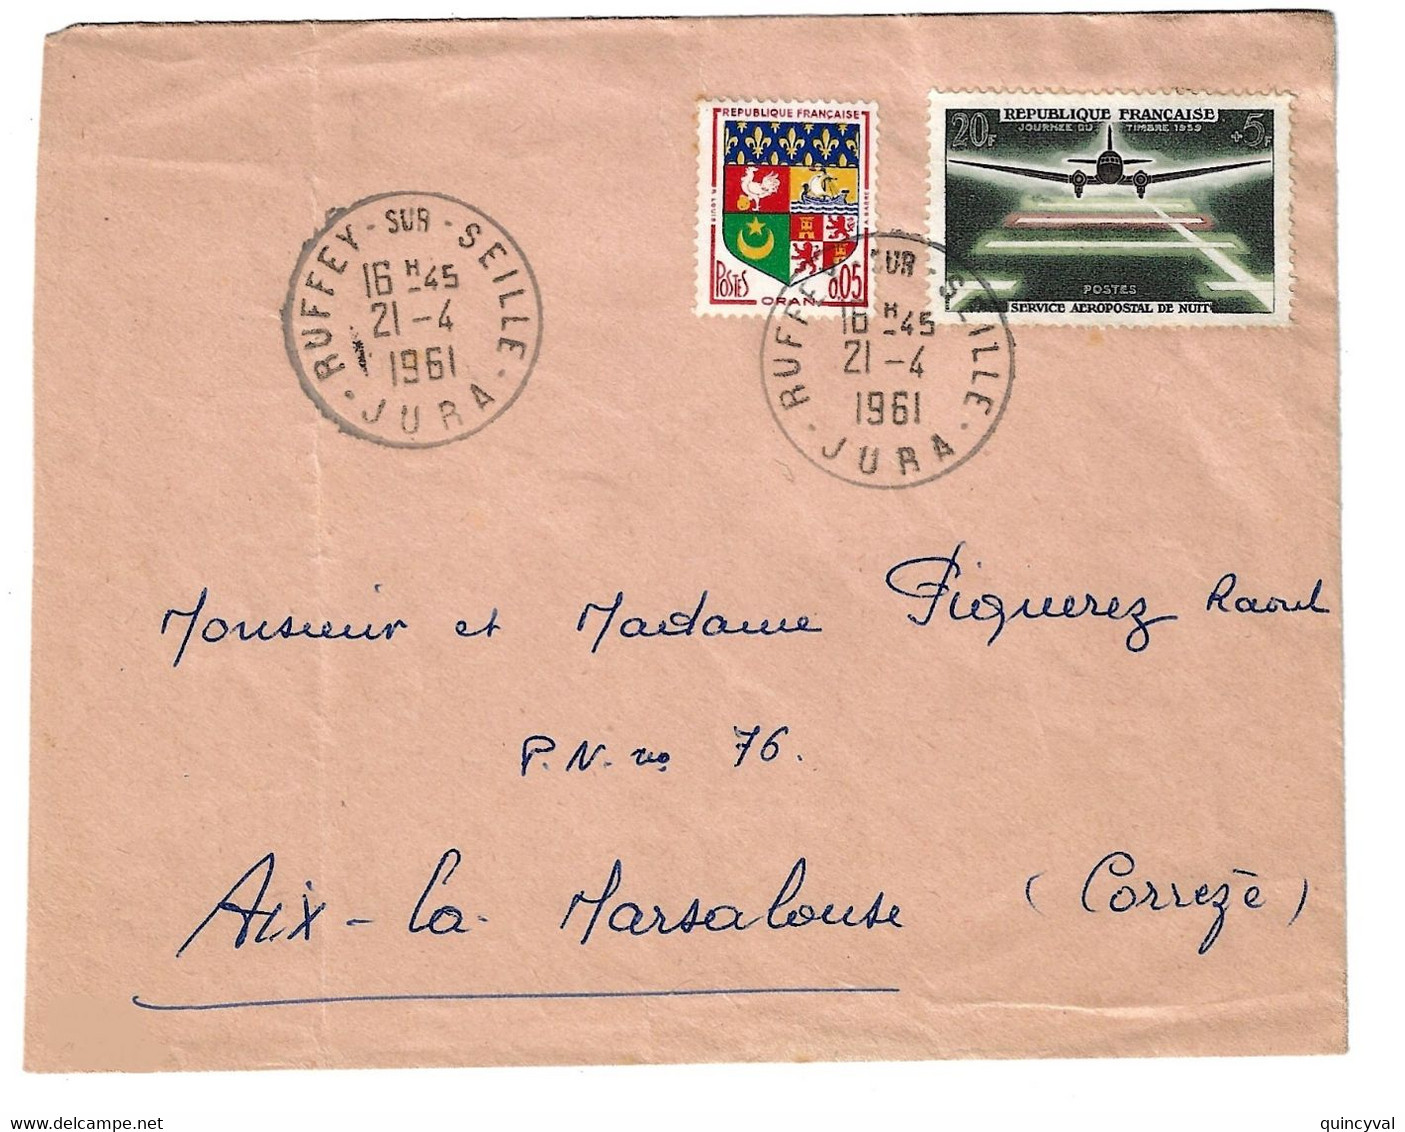 RUFFEY Sur SEILLE Lettre 5c Blason Oran 25c Ecole De L'air Salon De Provence Yv 1381 1496 Ob 7 6 1966 - Covers & Documents